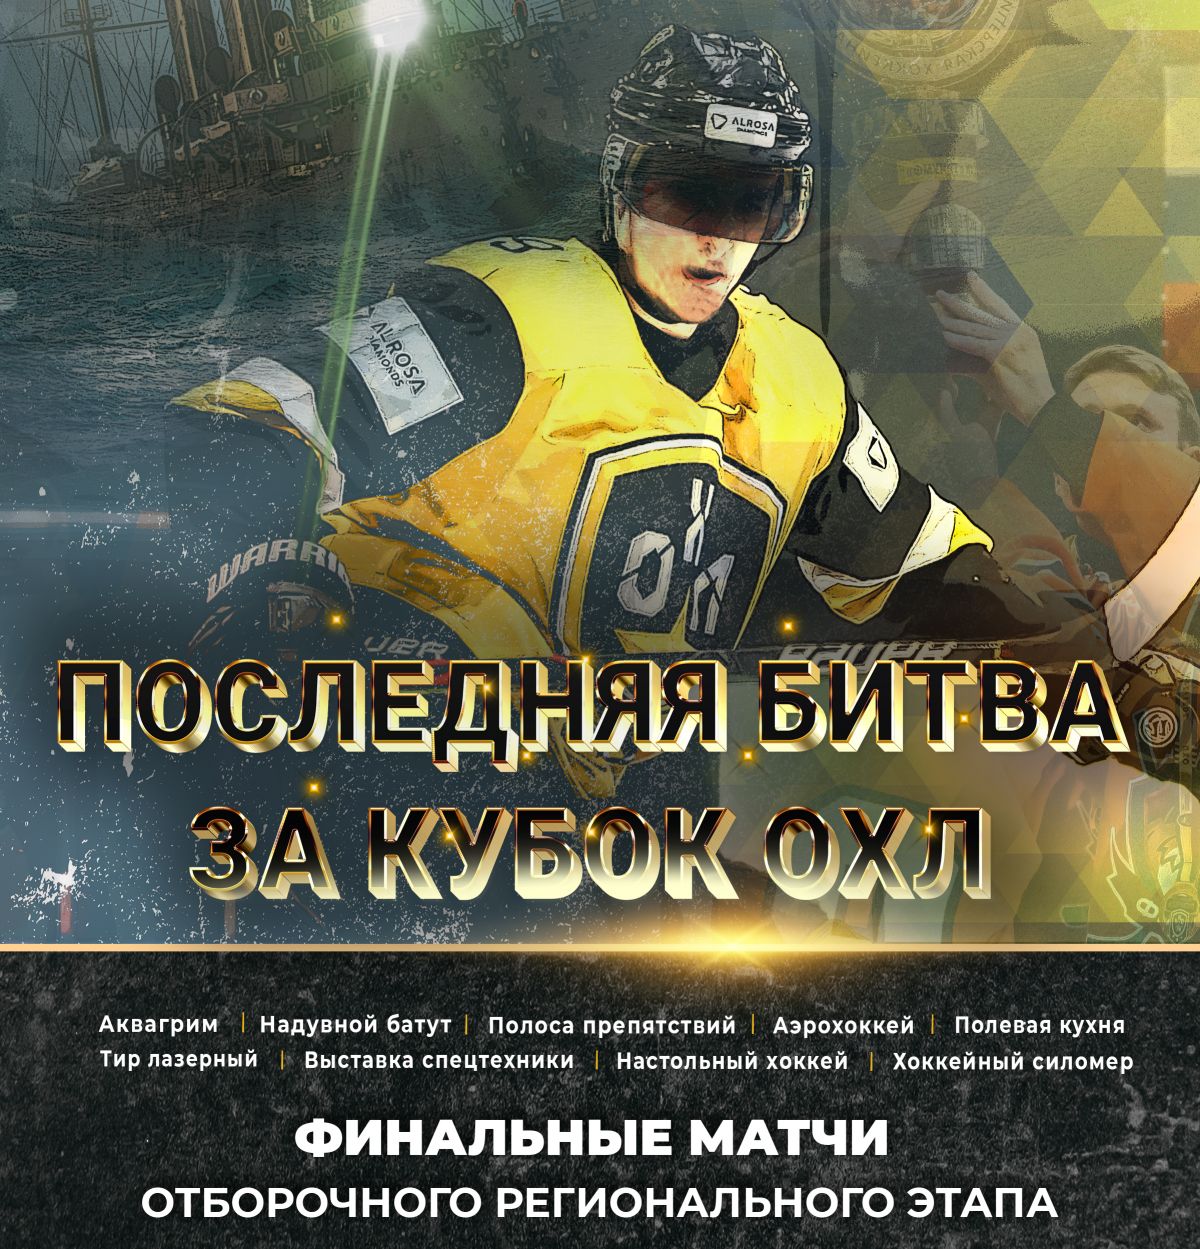 В Санкт-Петербурге состоятся финалы 2-го сезона ОХЛ